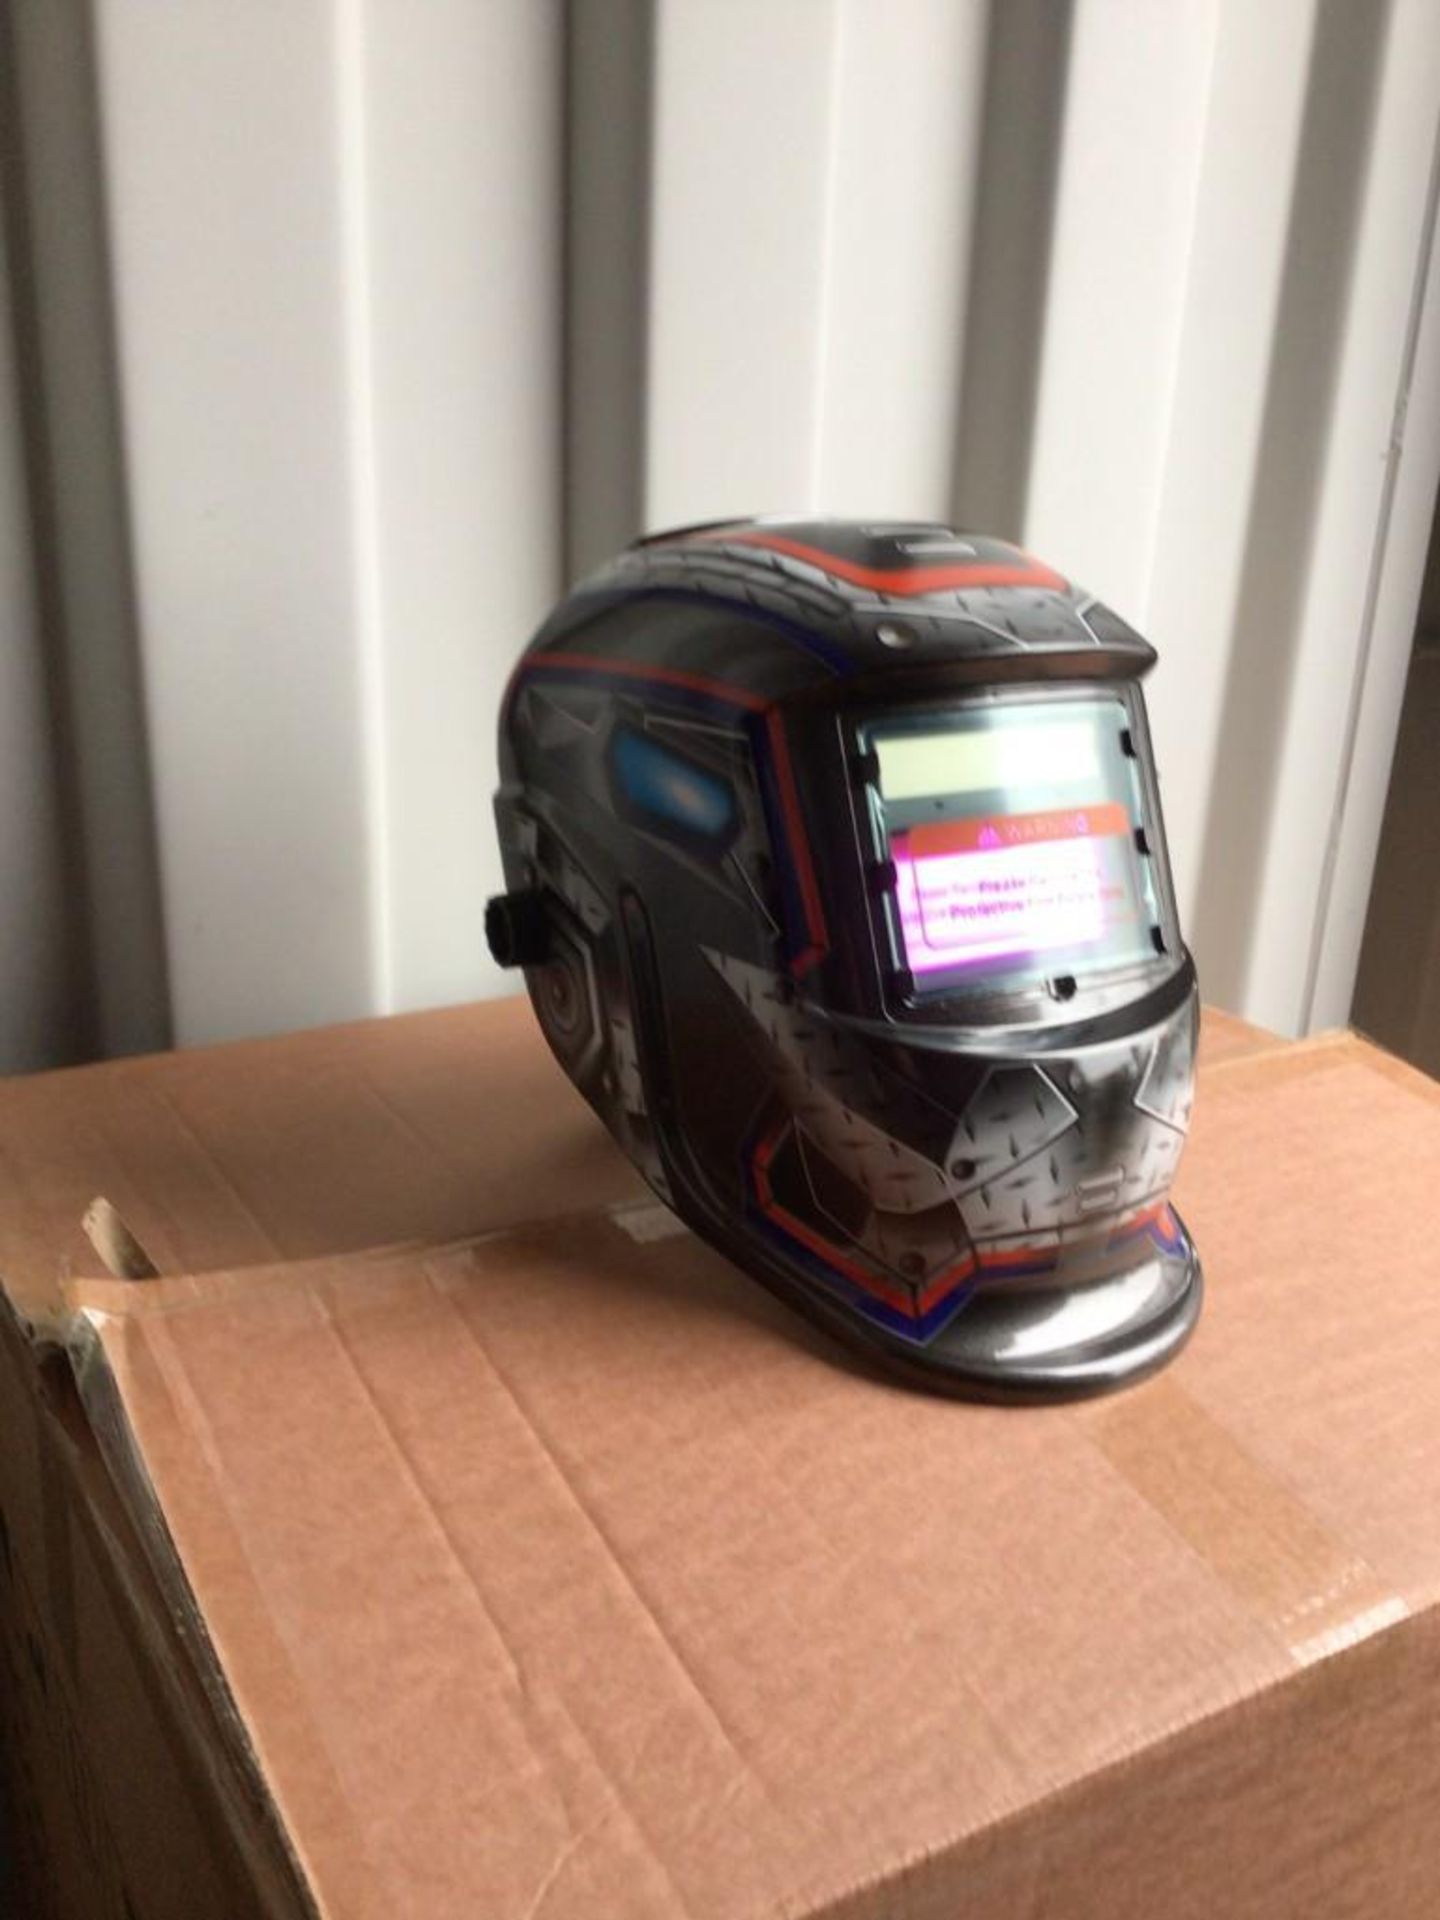 New Auto Darkening Welding Helmet - Image 3 of 7